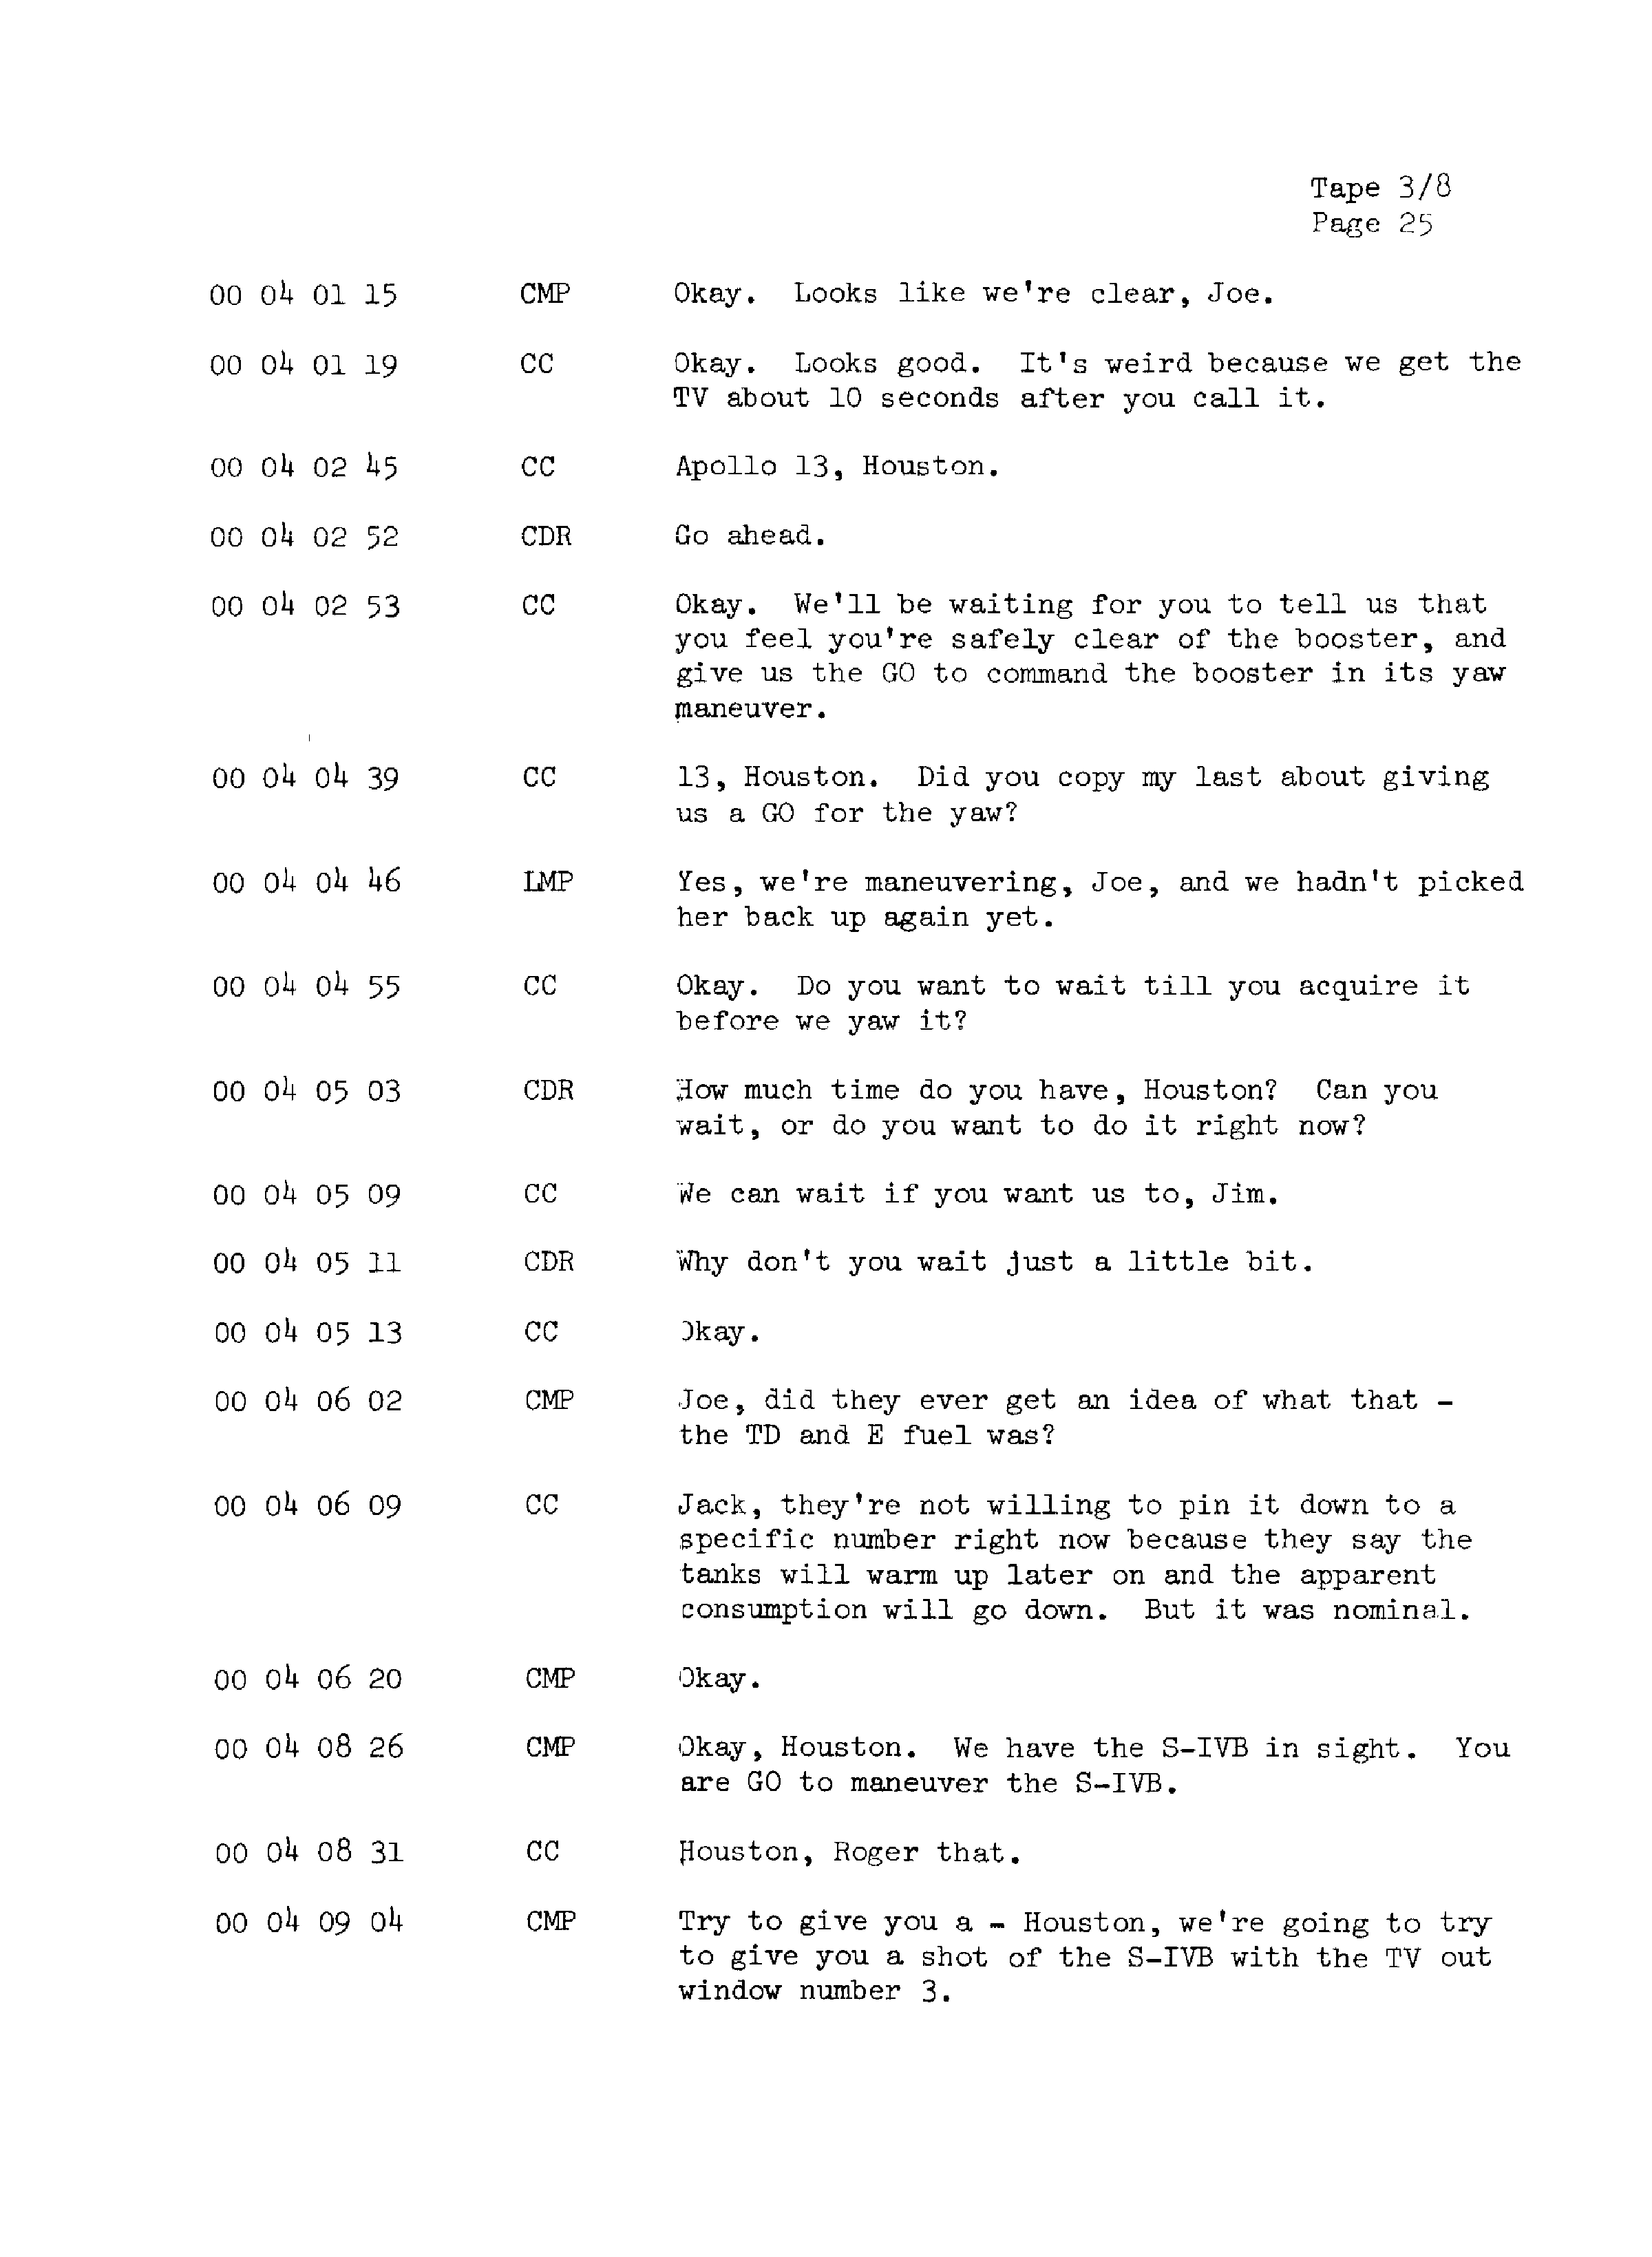 Page 32 of Apollo 13’s original transcript